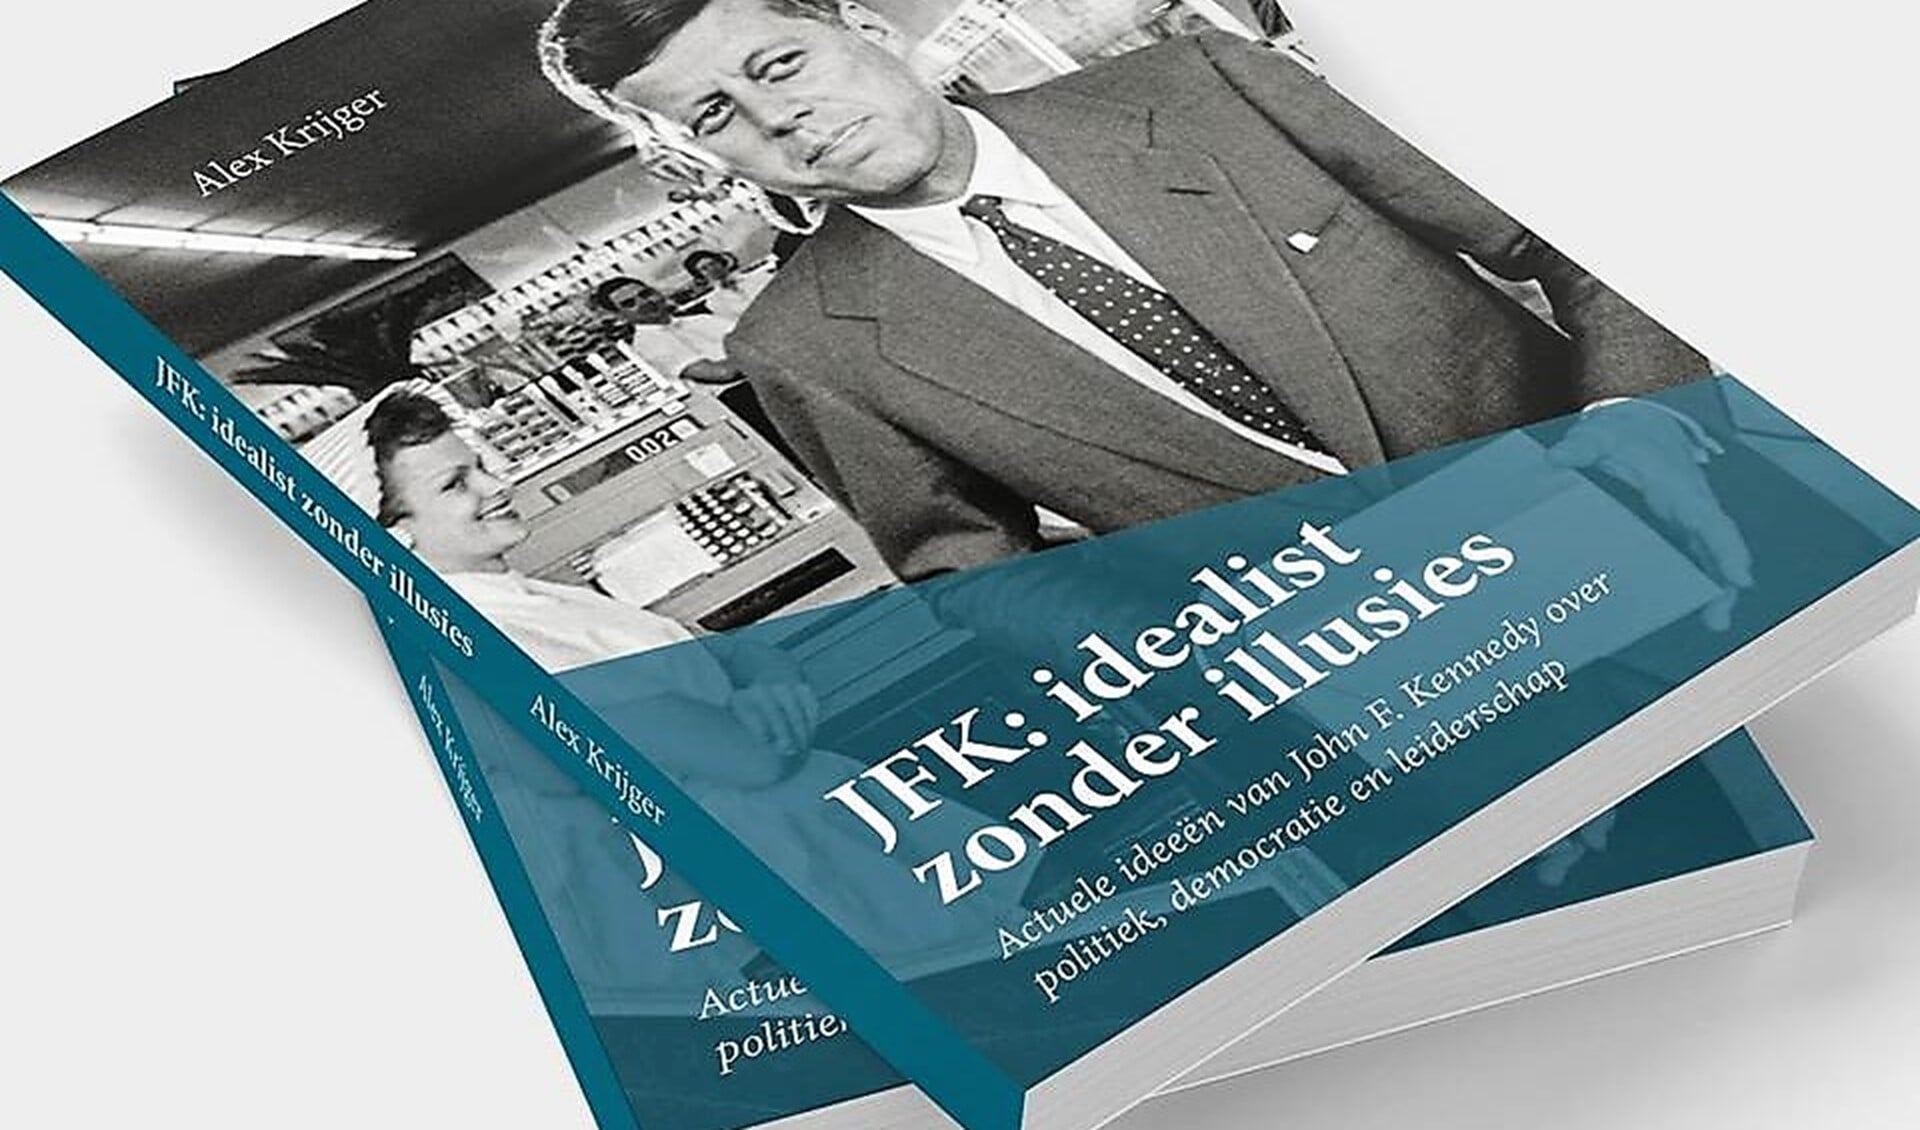 Het boek. 'JFK: idealist zonder illusies' van de Voorburgse historicus Alex Krijger.